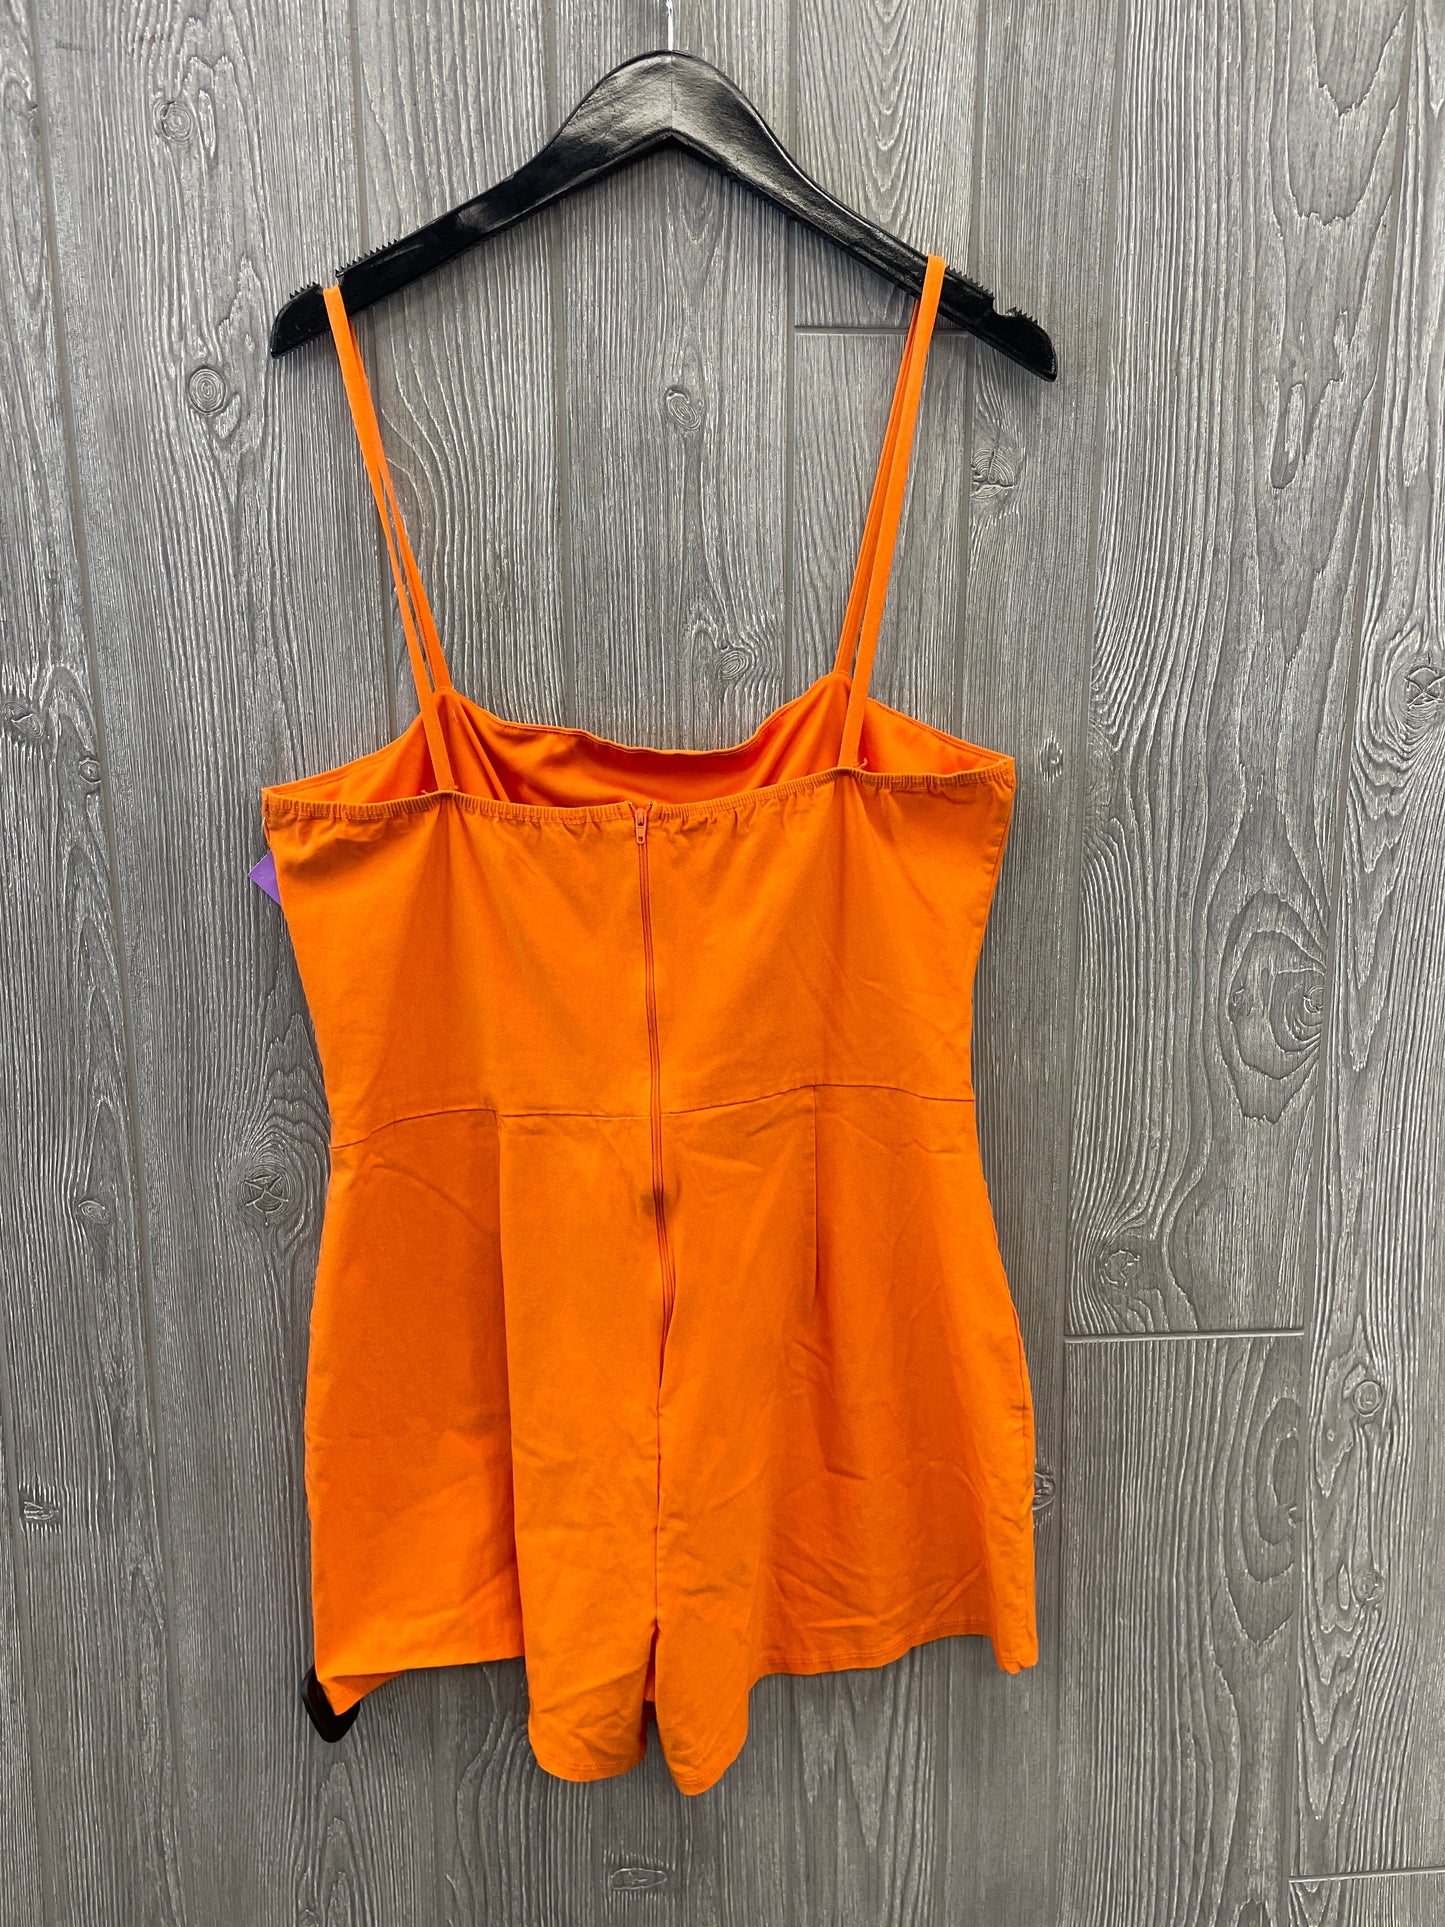 Orange Romper Fashion Nova, Size 1x